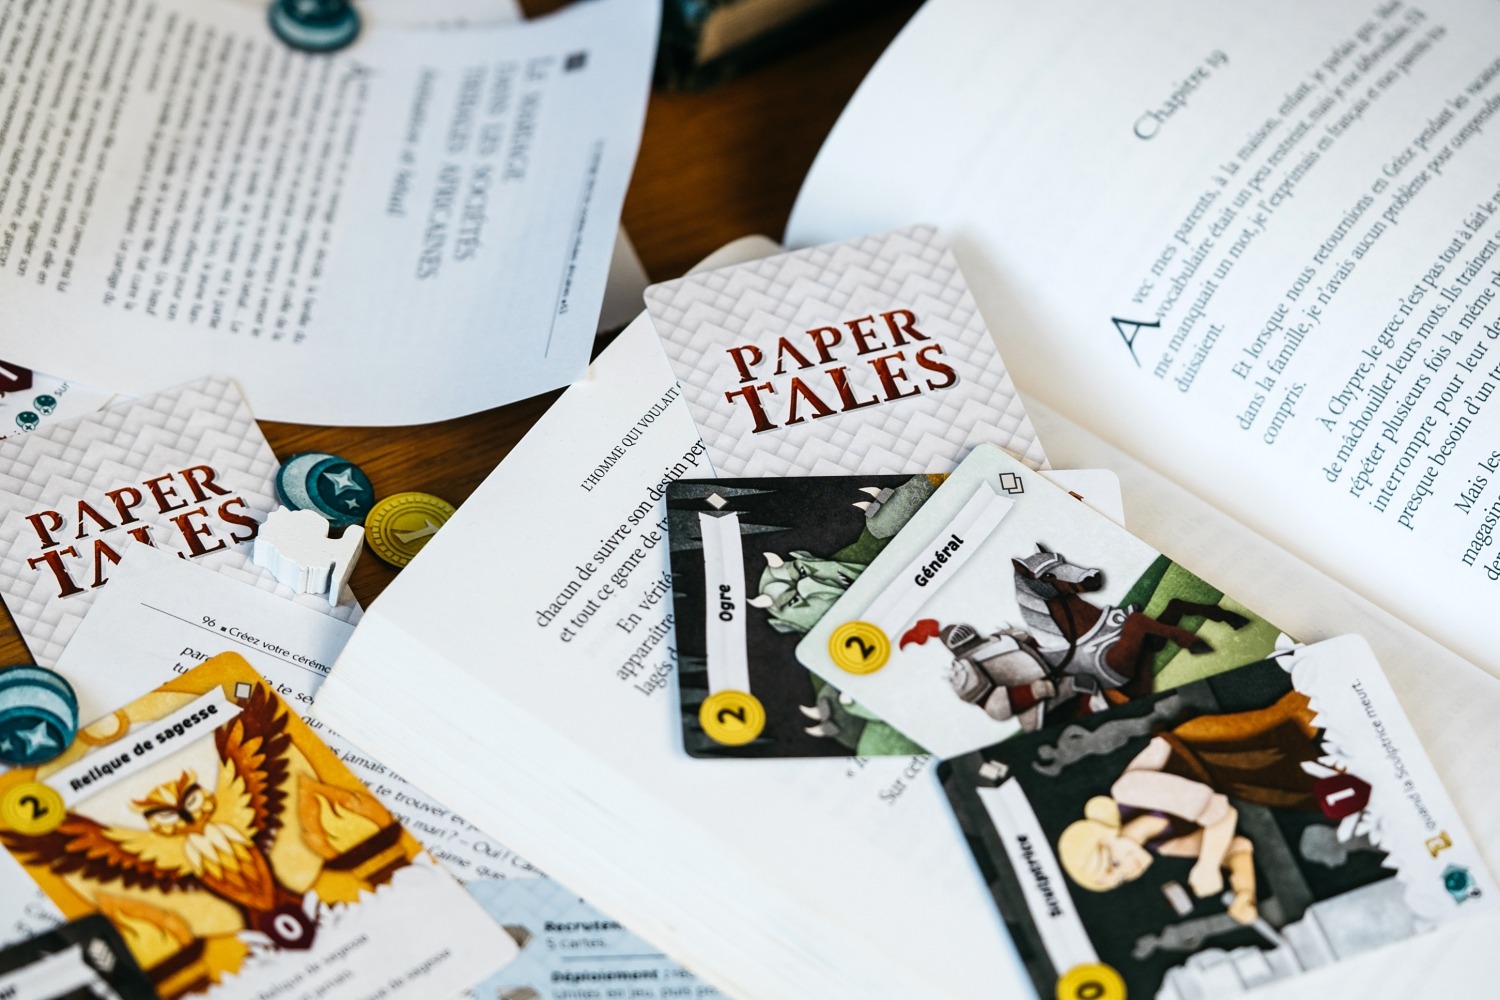 Paper tales catch up games jeu de société boardgame